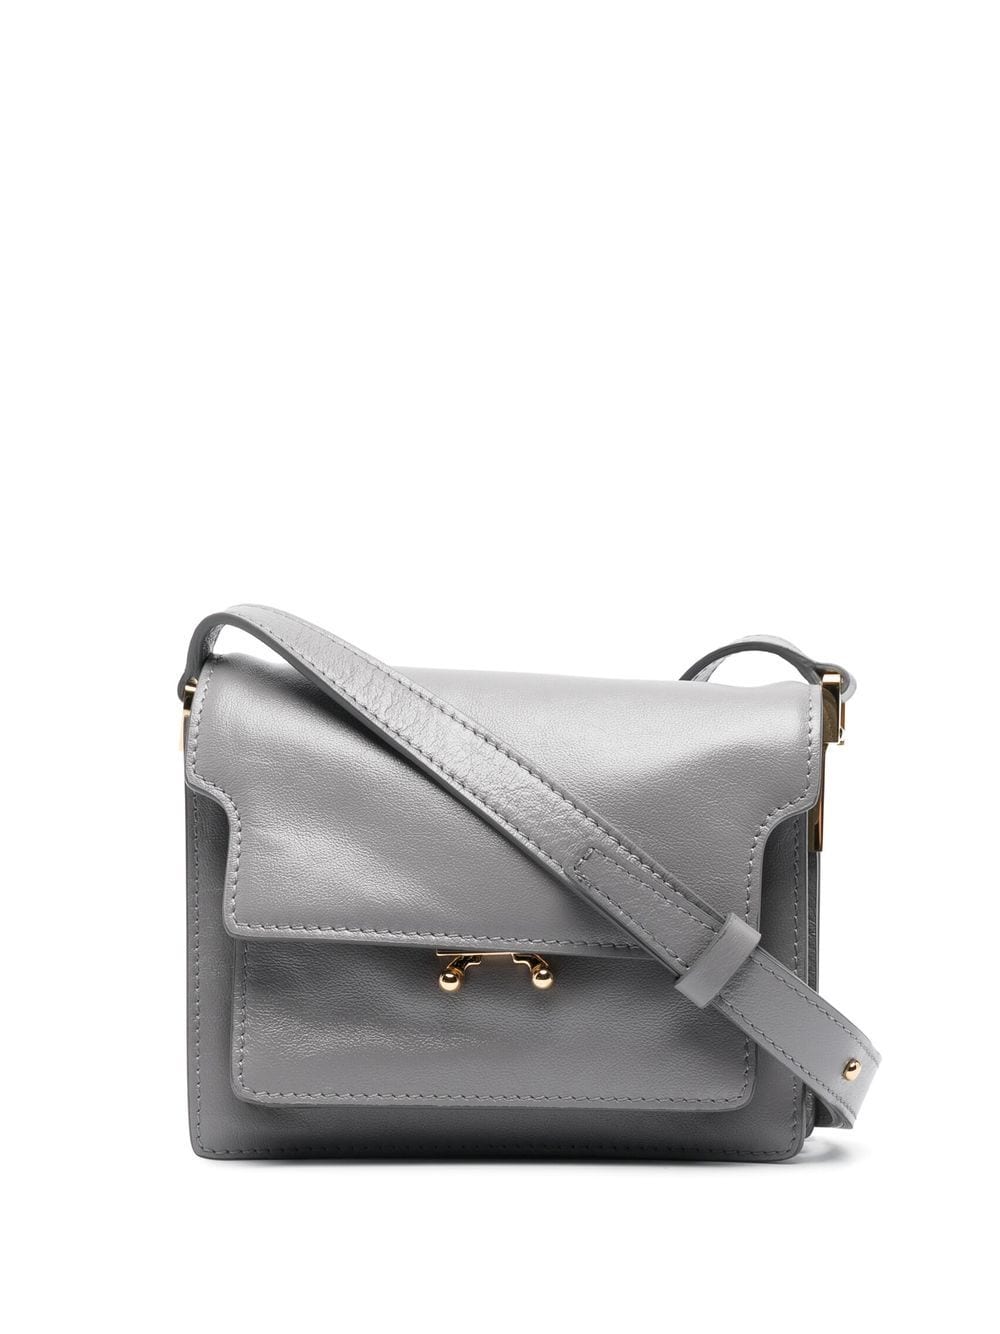 Marni Trunk leather satchel bag - Grey von Marni